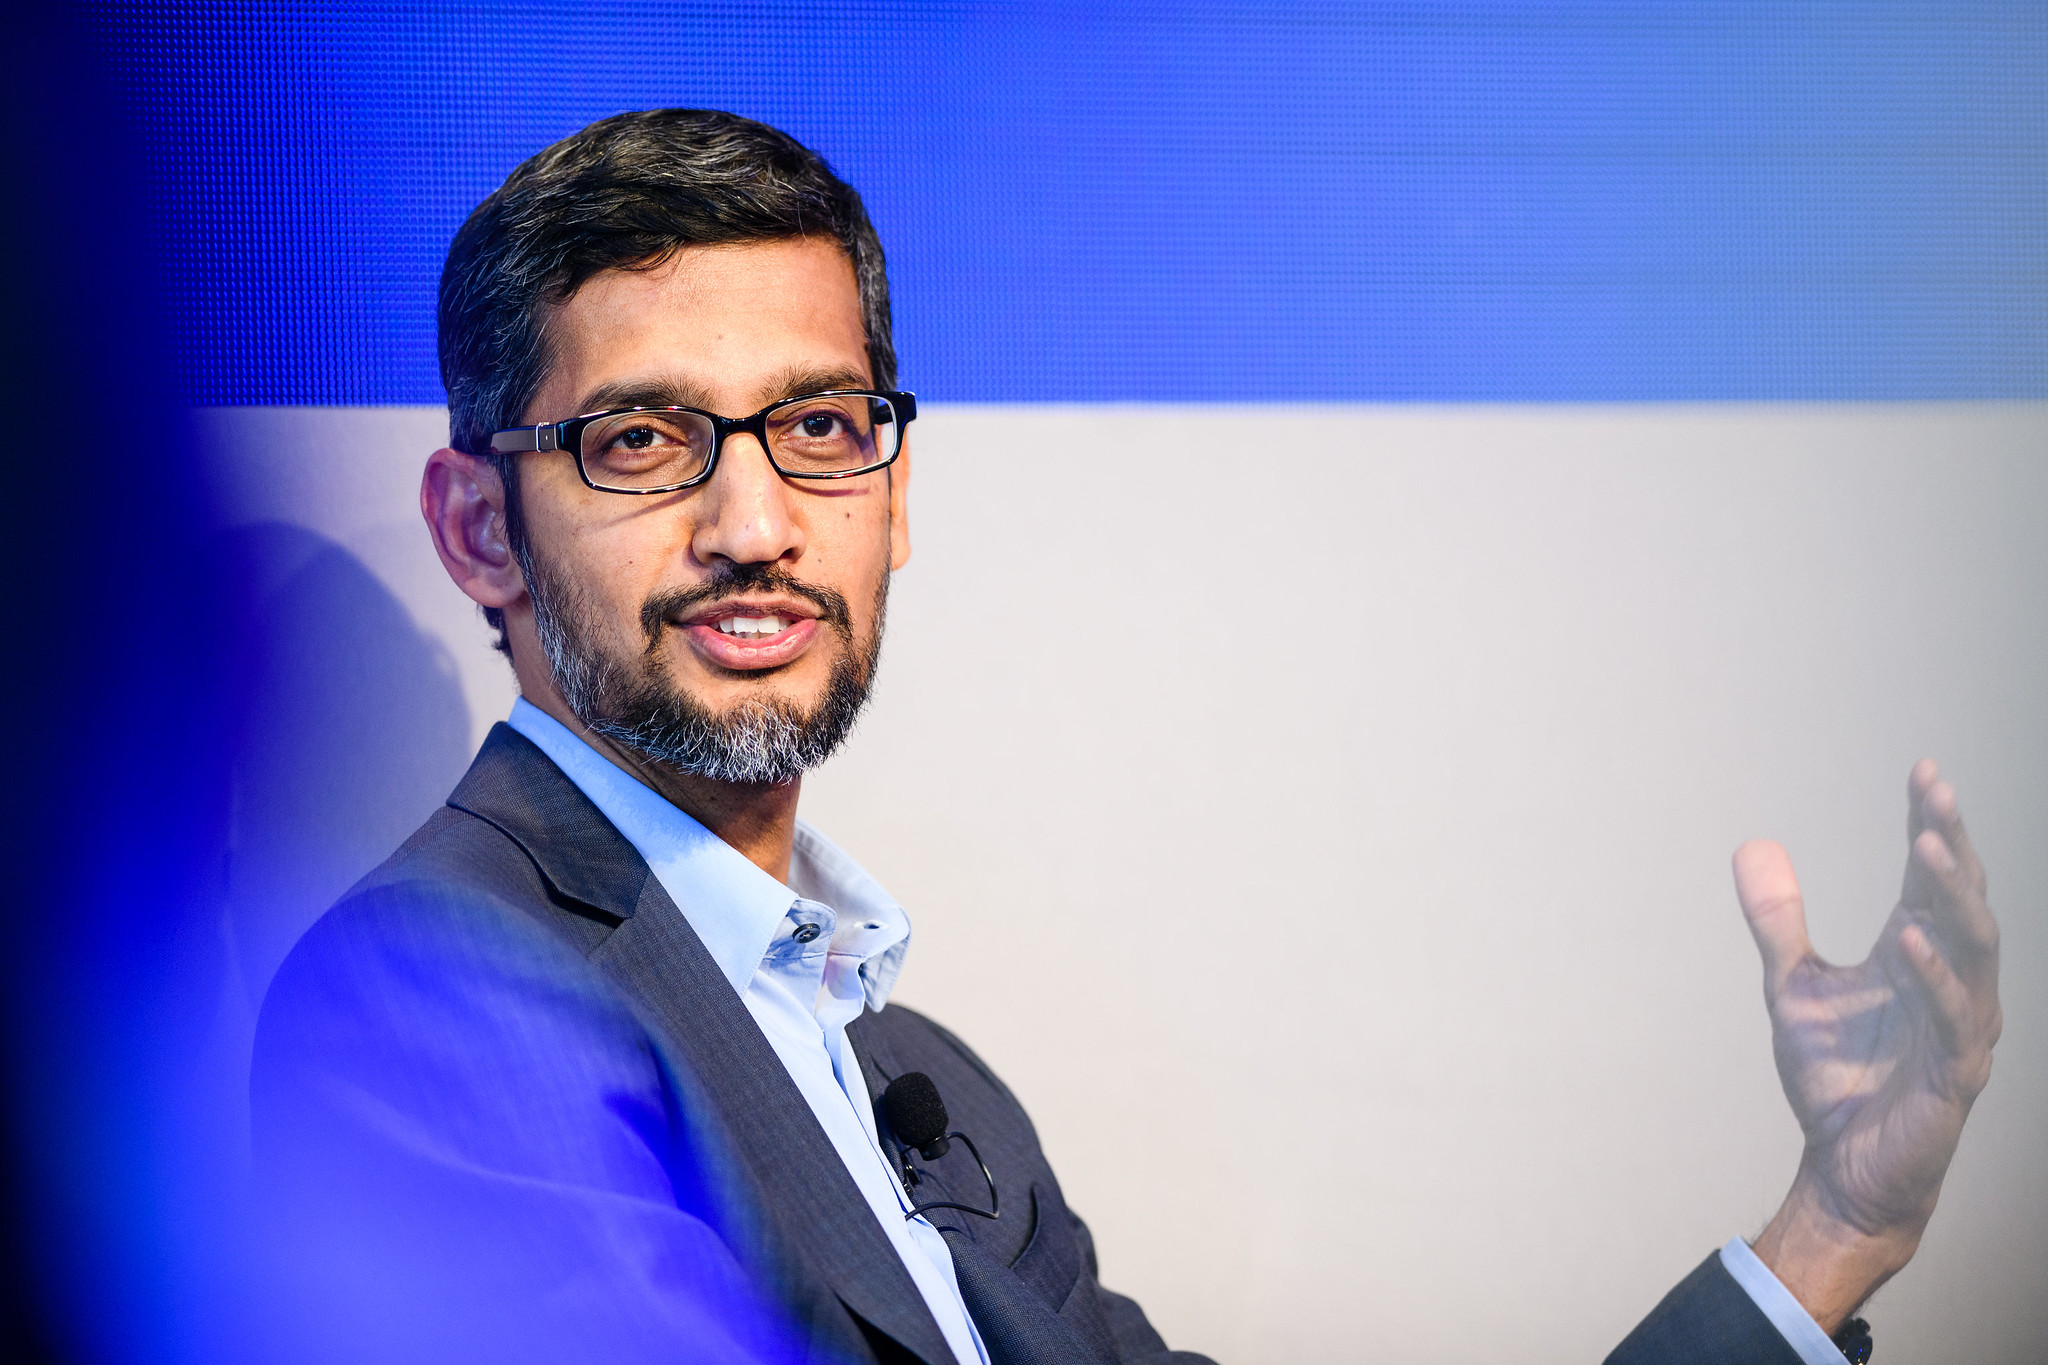 Sundar Pichai CEO of Google and Alphabet